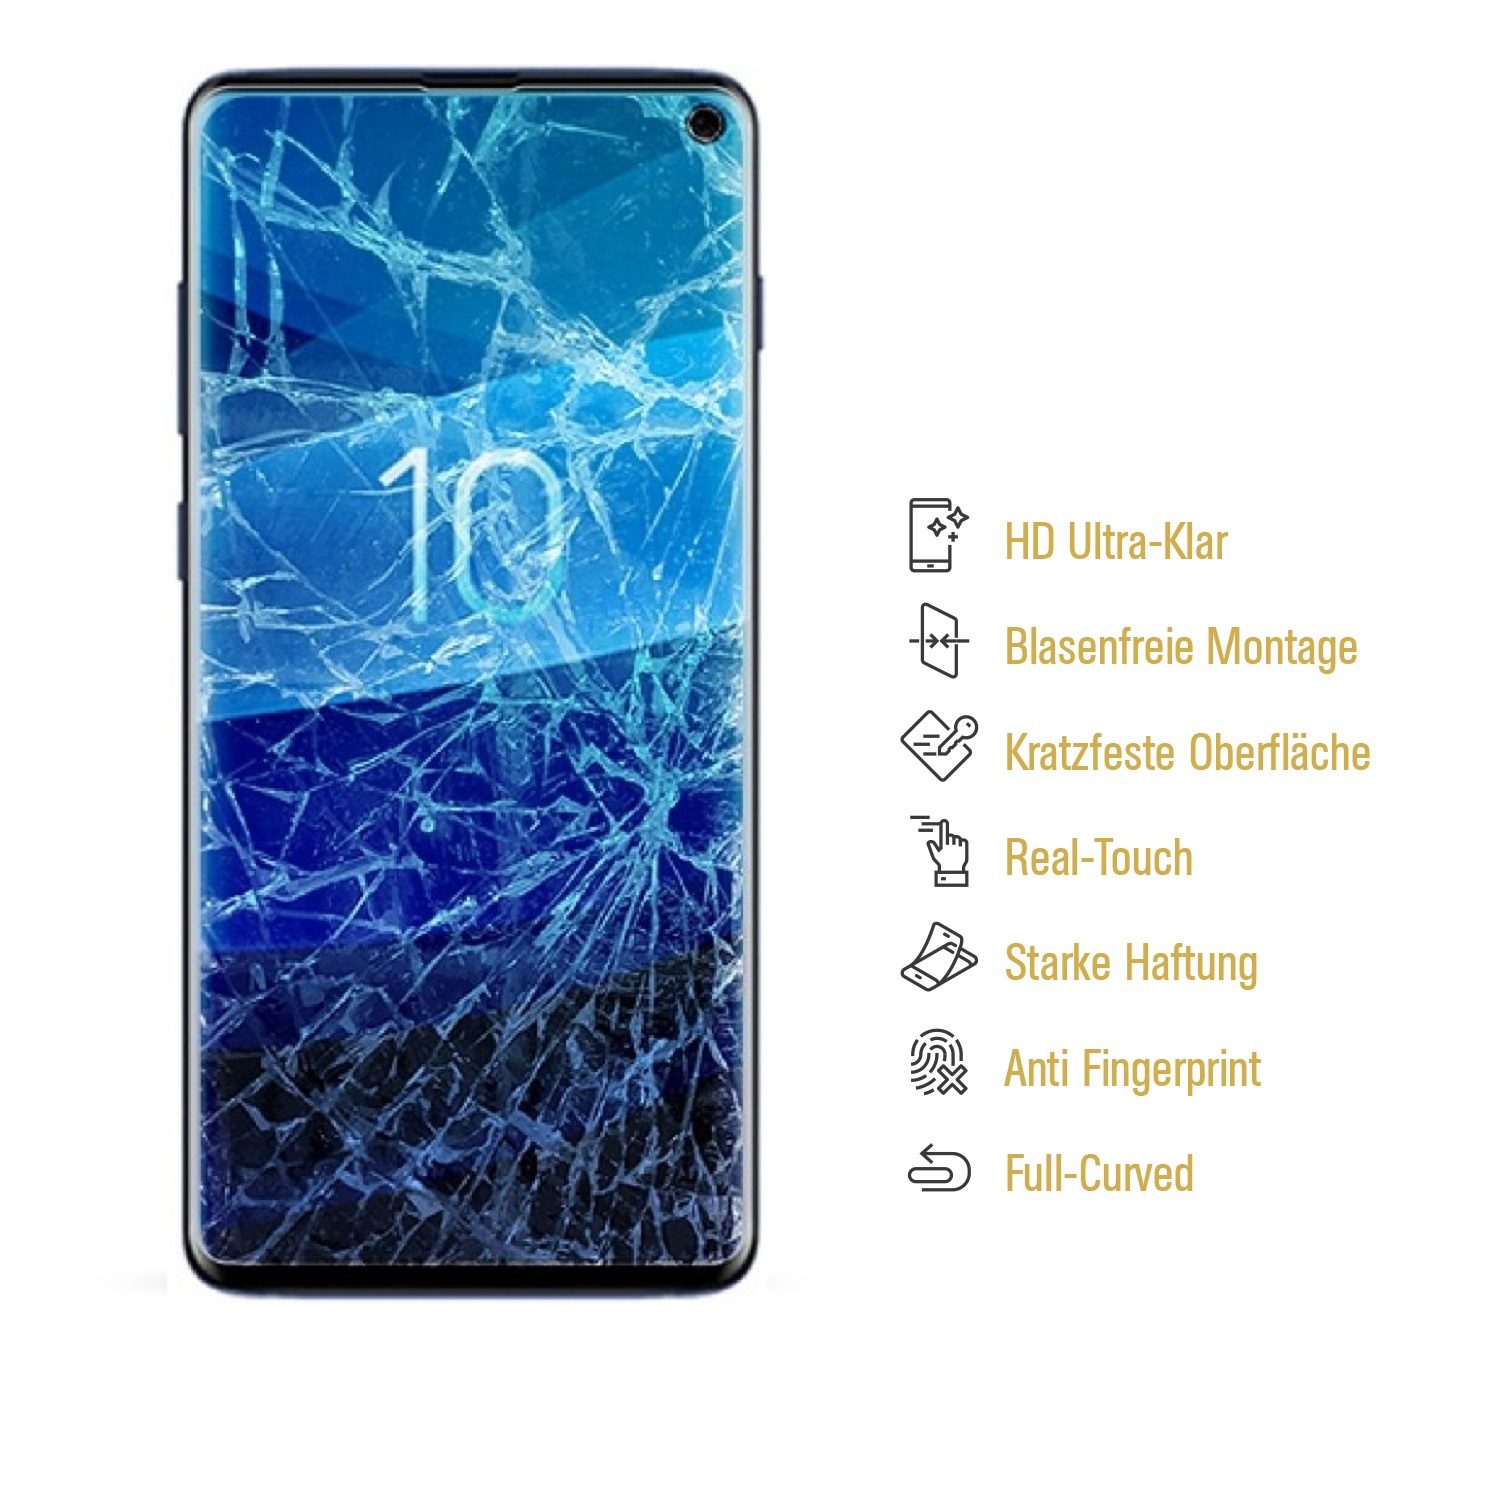 PROTECTORKING 3x Samsung ENTSPIEGELT Displayschutzfolie(für Nano-Glas Flexibles S10e) Galaxy MATT